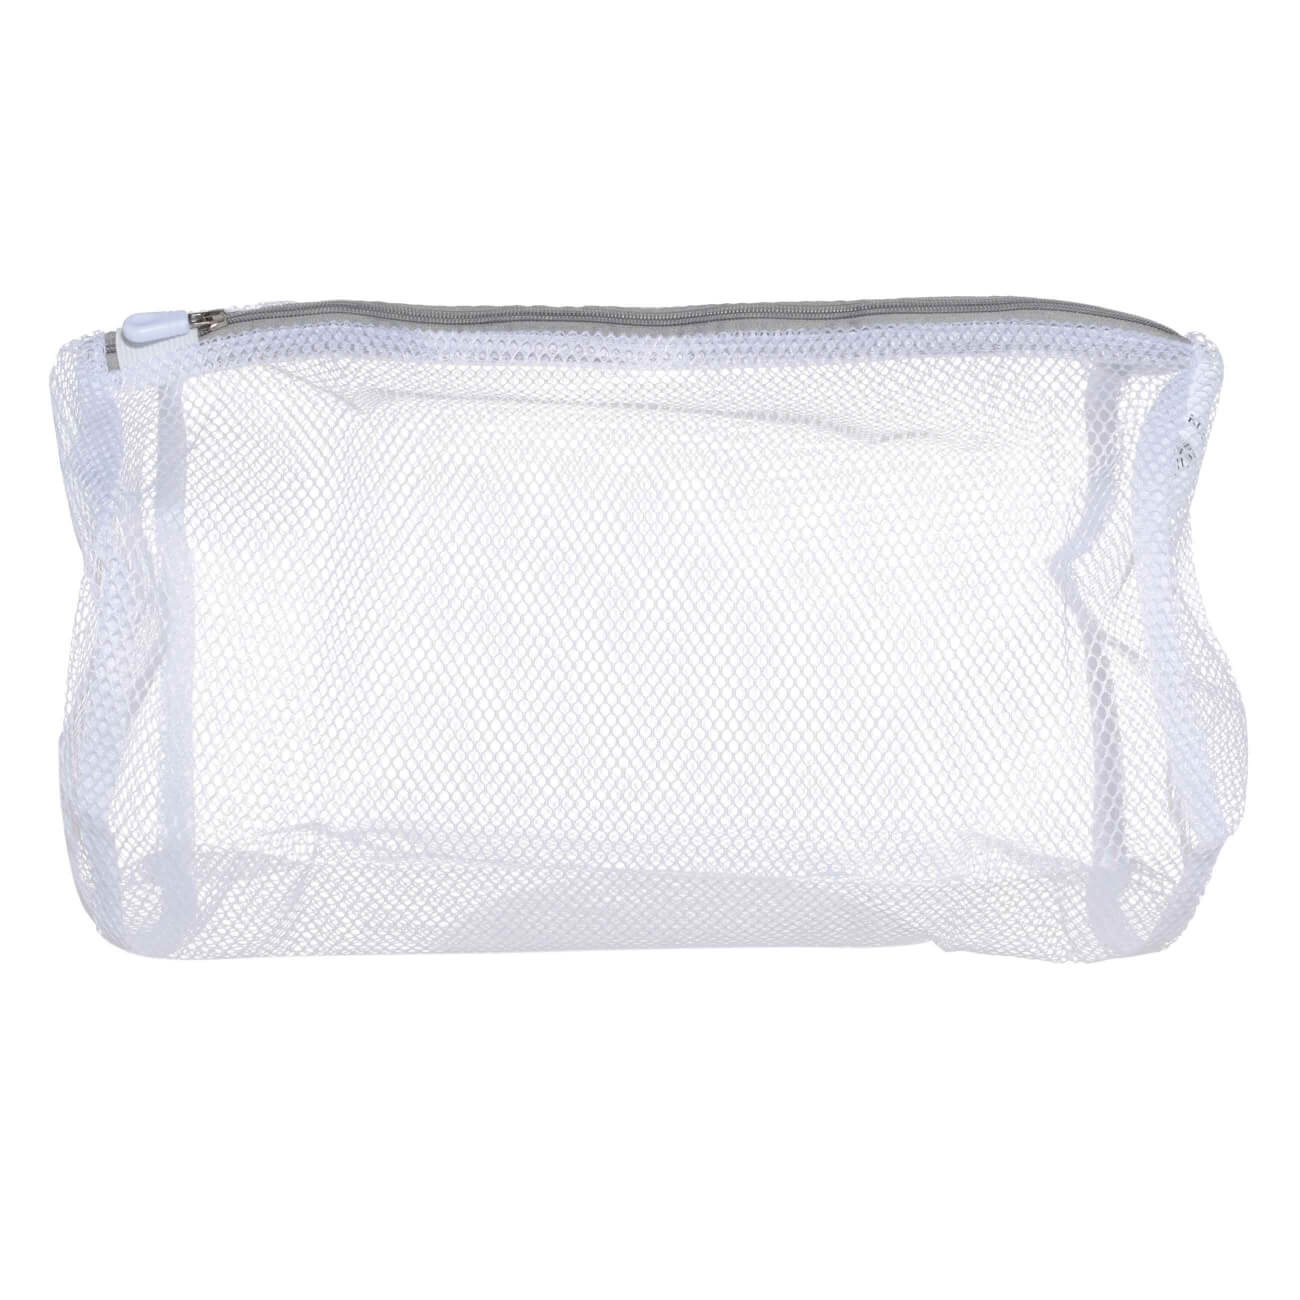 Мешок для стирки носков и колготок, 22х33 см, полиэстер, бело-серый, Safety мешок сетка для стирки деликатных вещей unistor